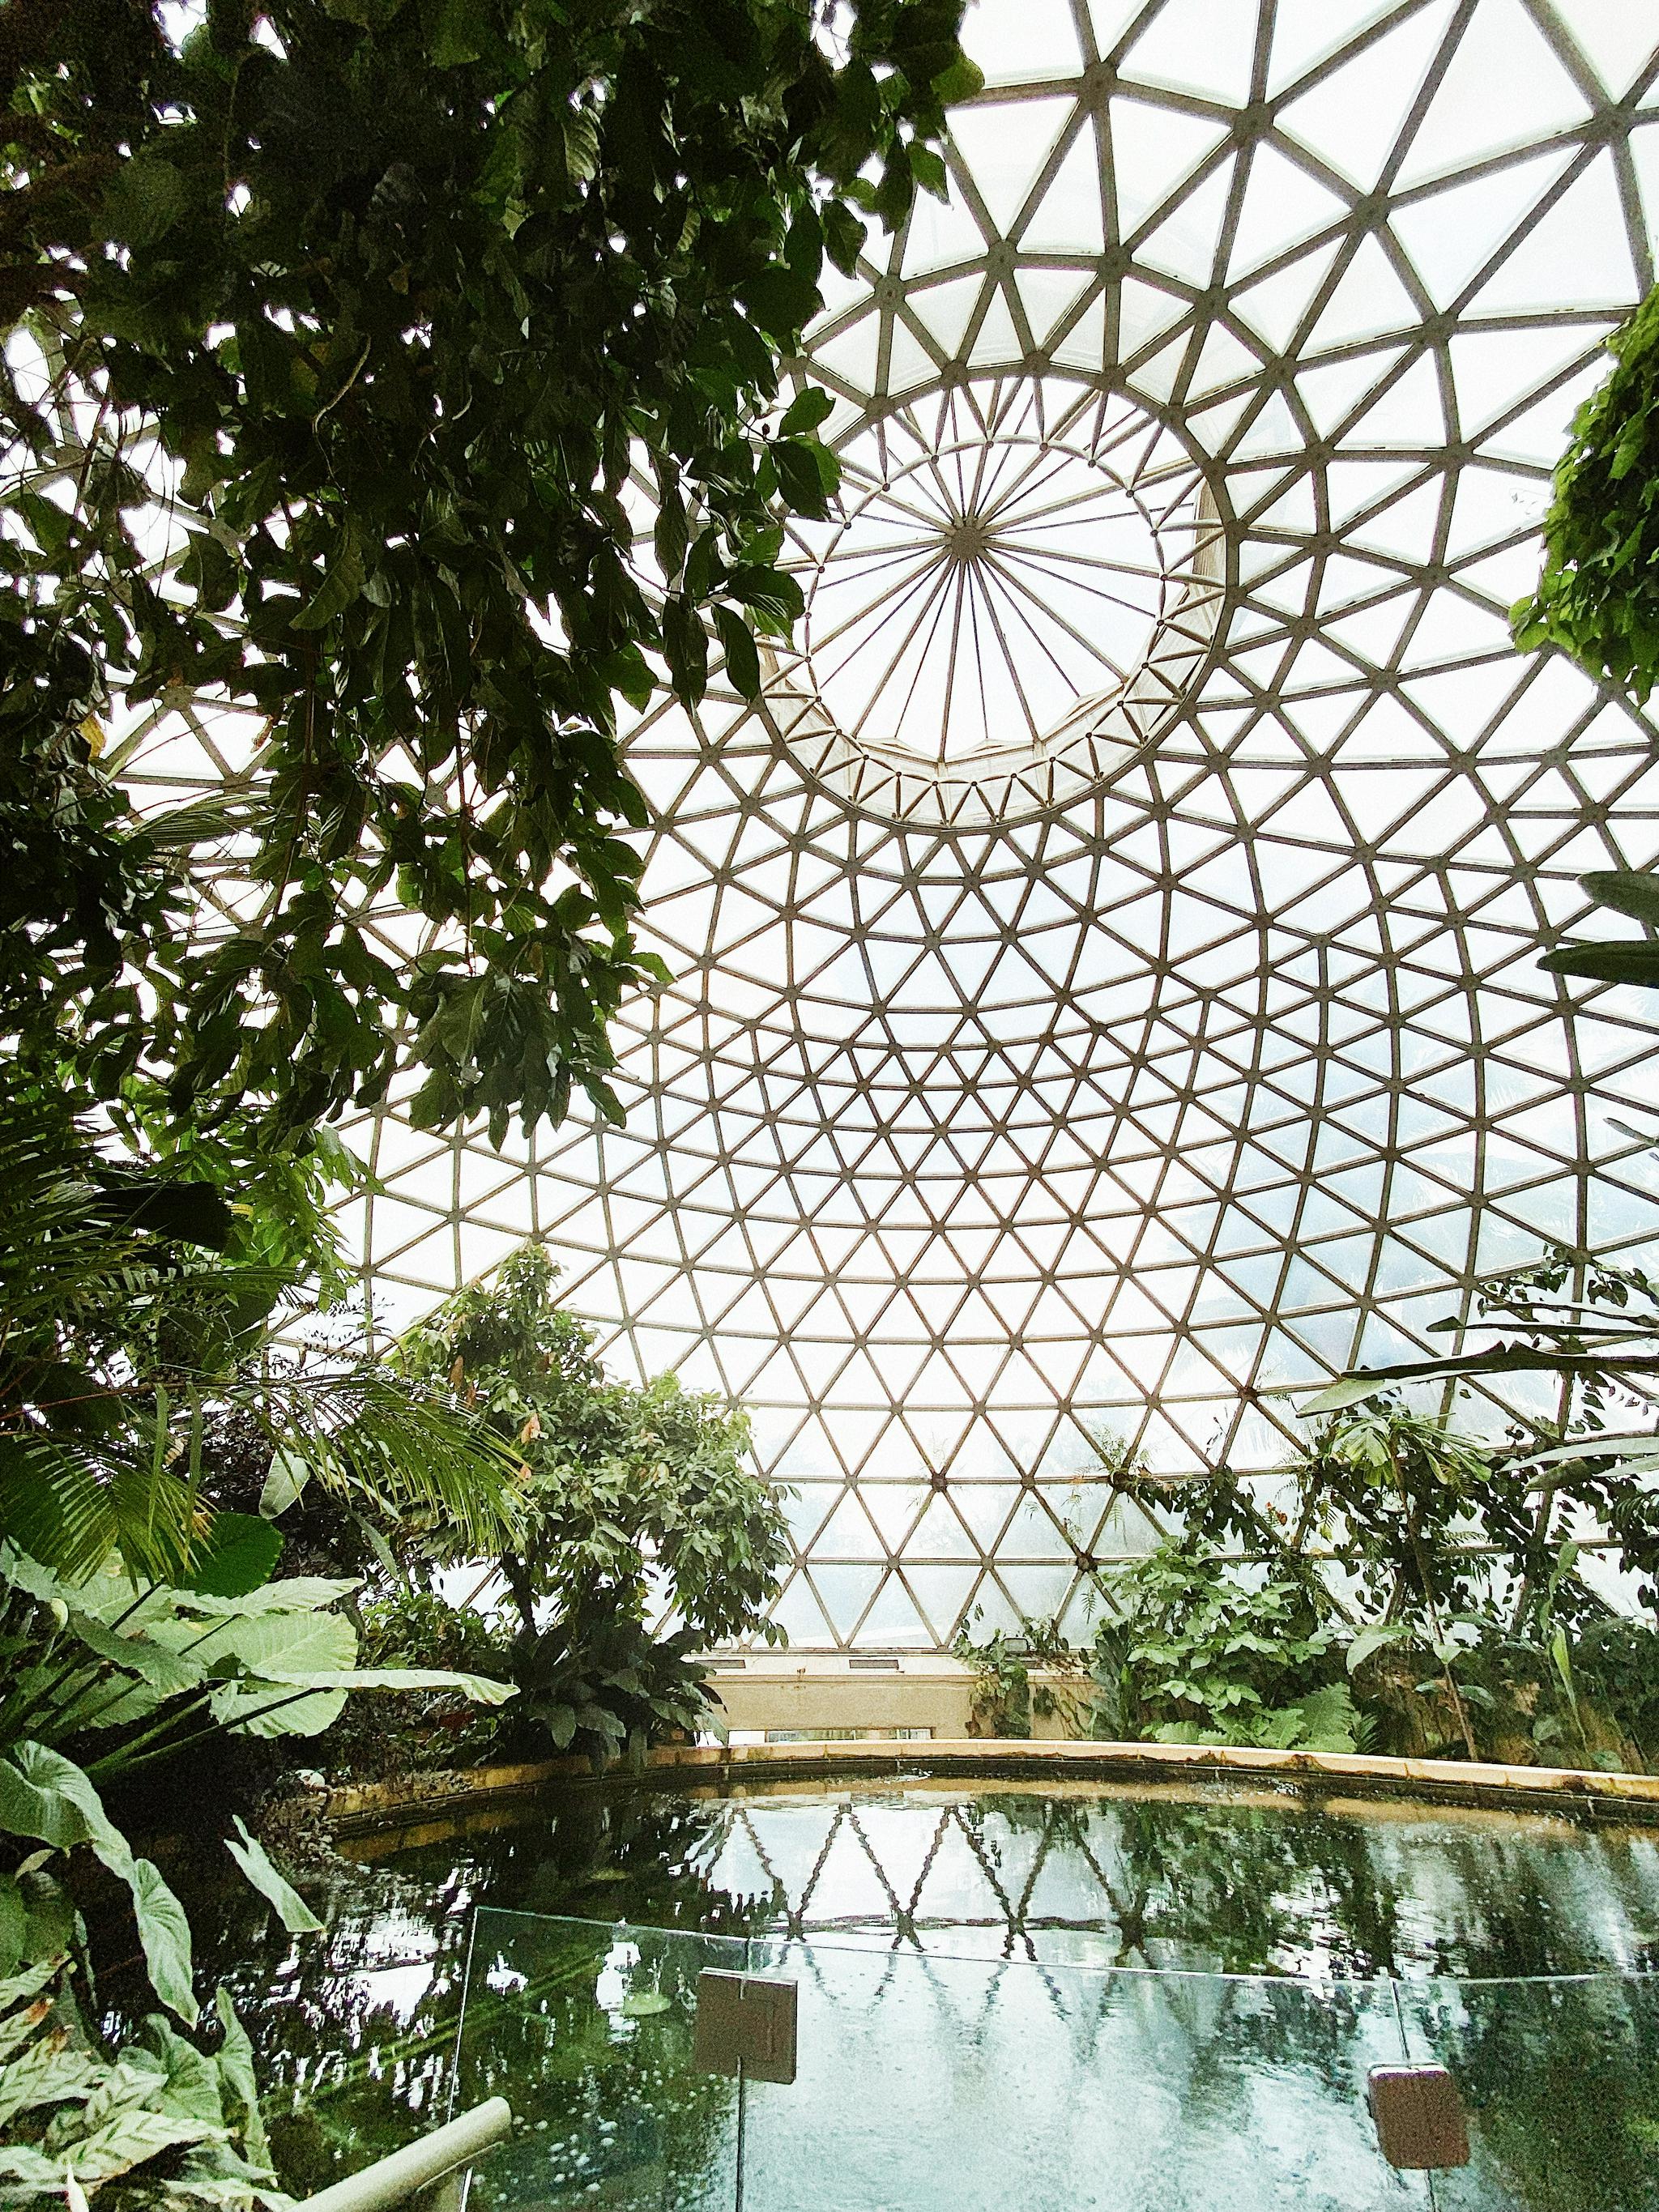 思窝星图腾:布里斯班植物园,从植物的生根发芽,聊聊人生的选择